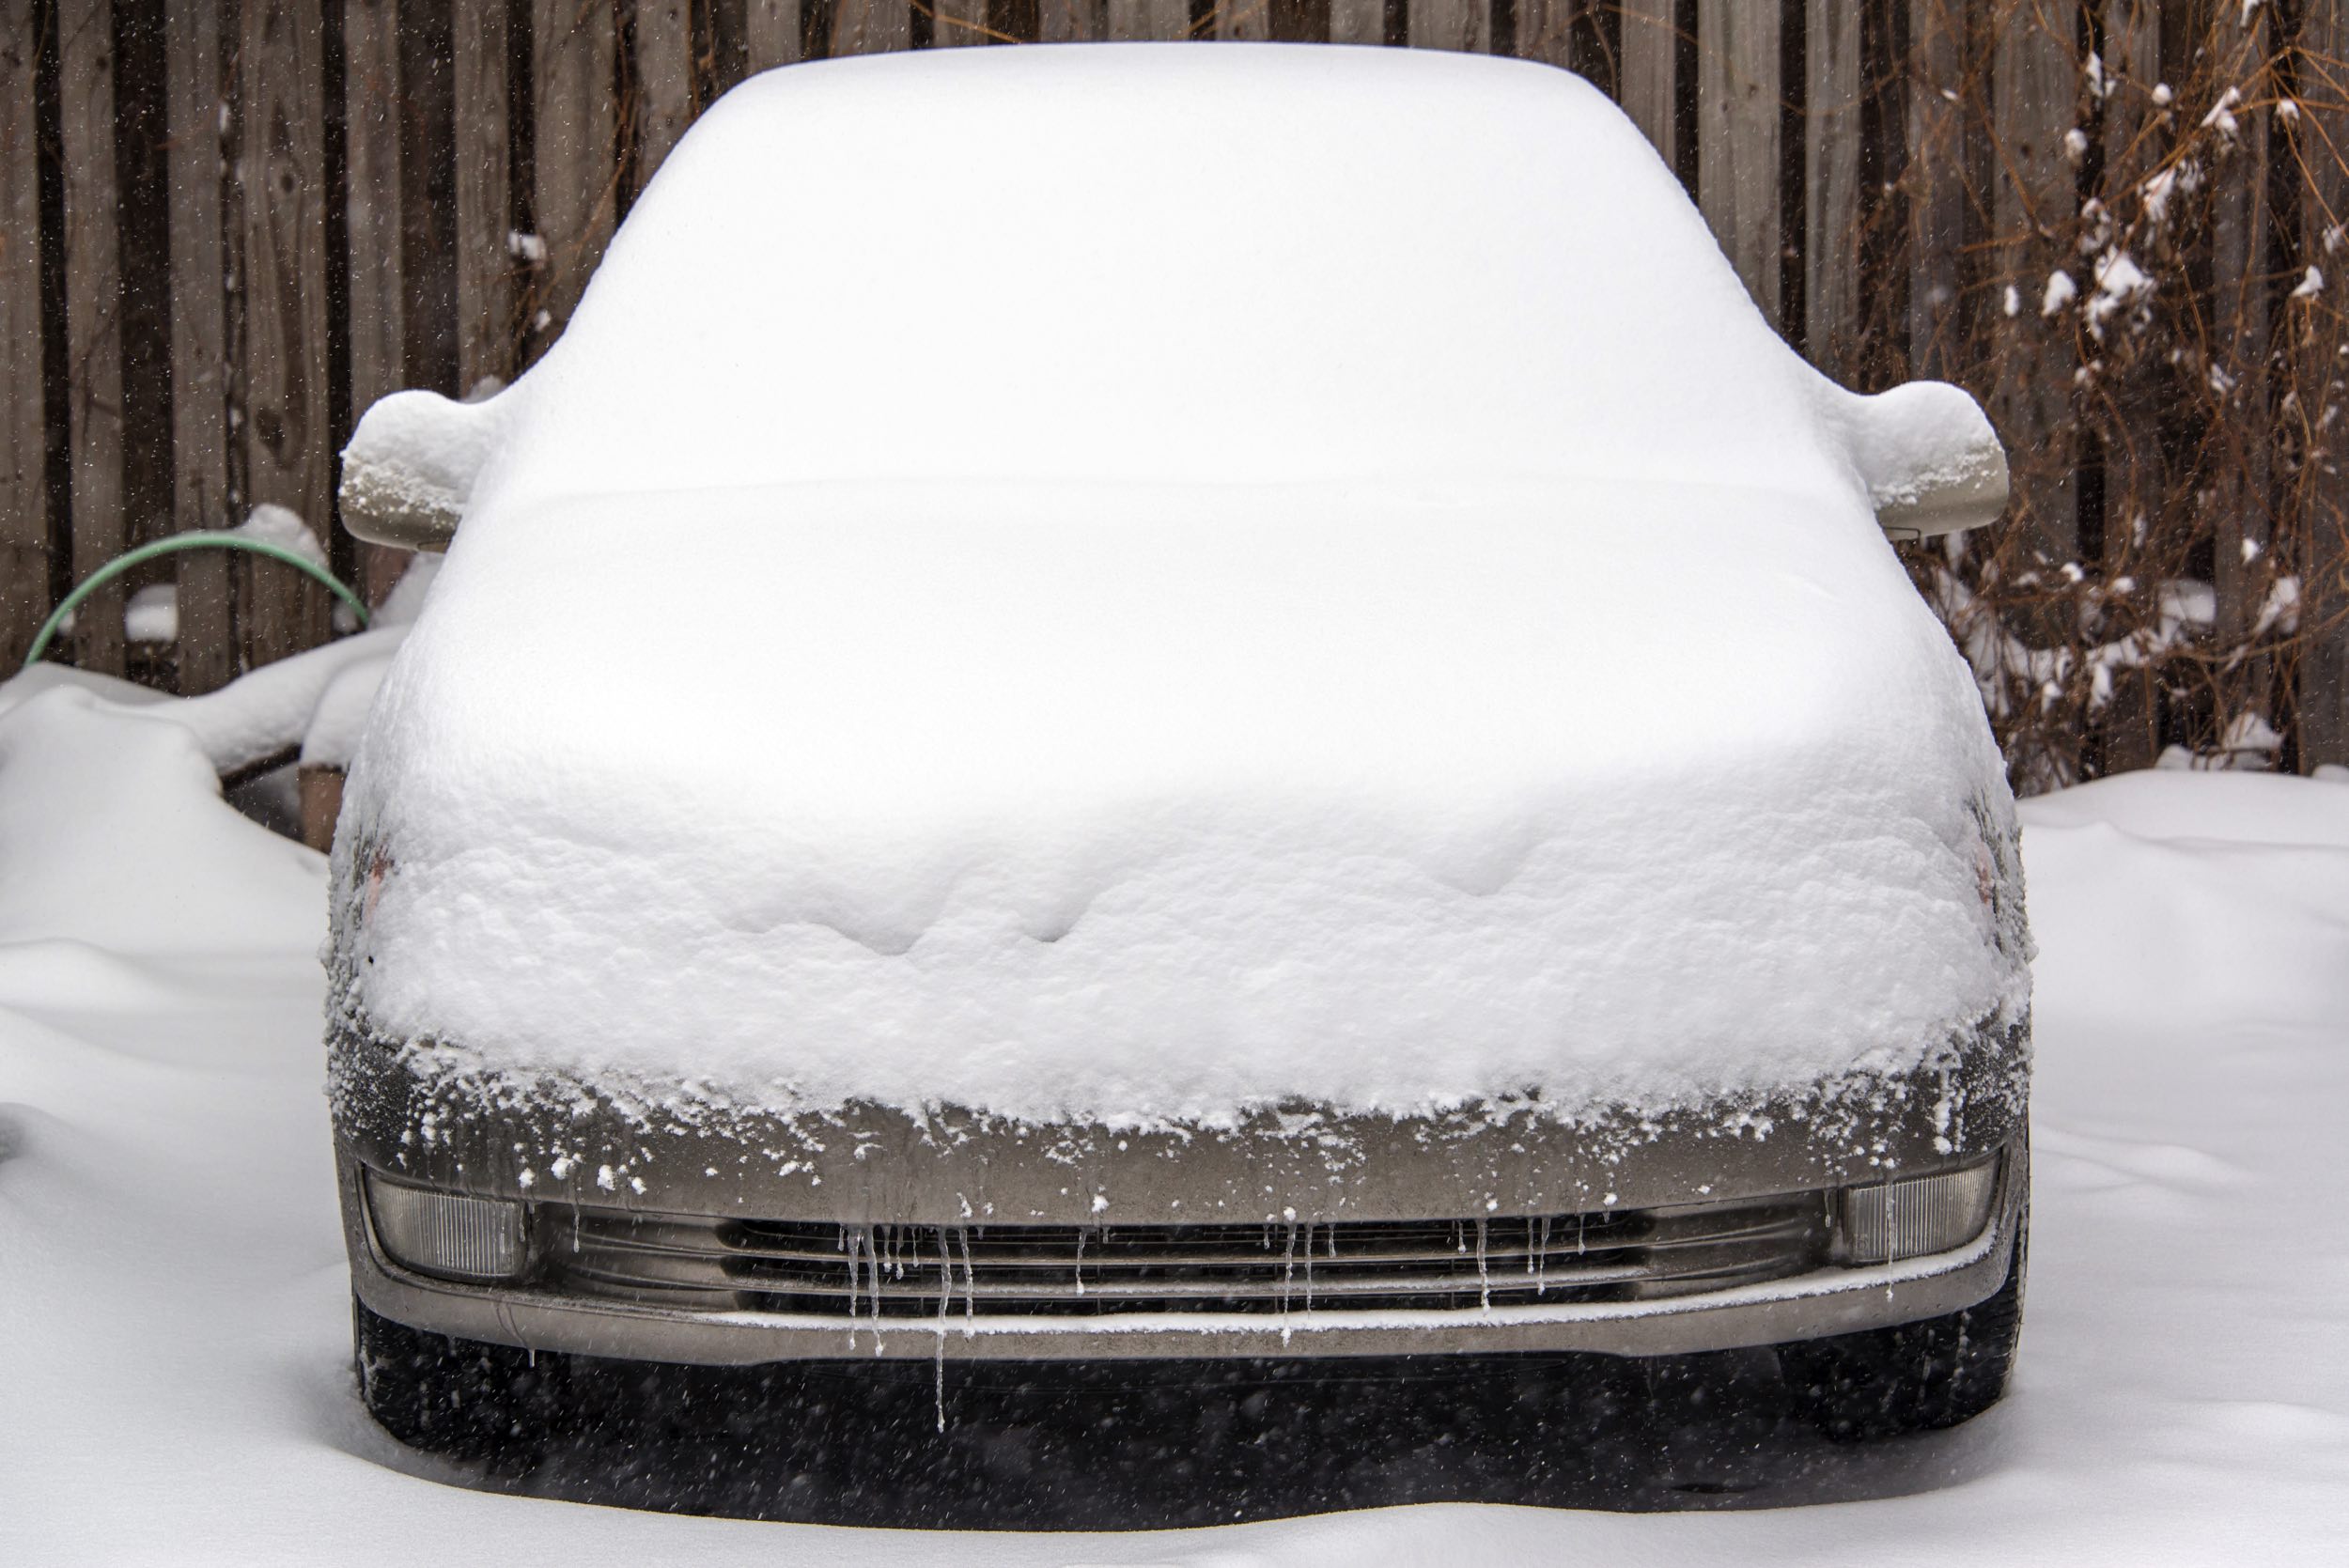 Samochód pokryty śniegiem, ilustracja do artykułu